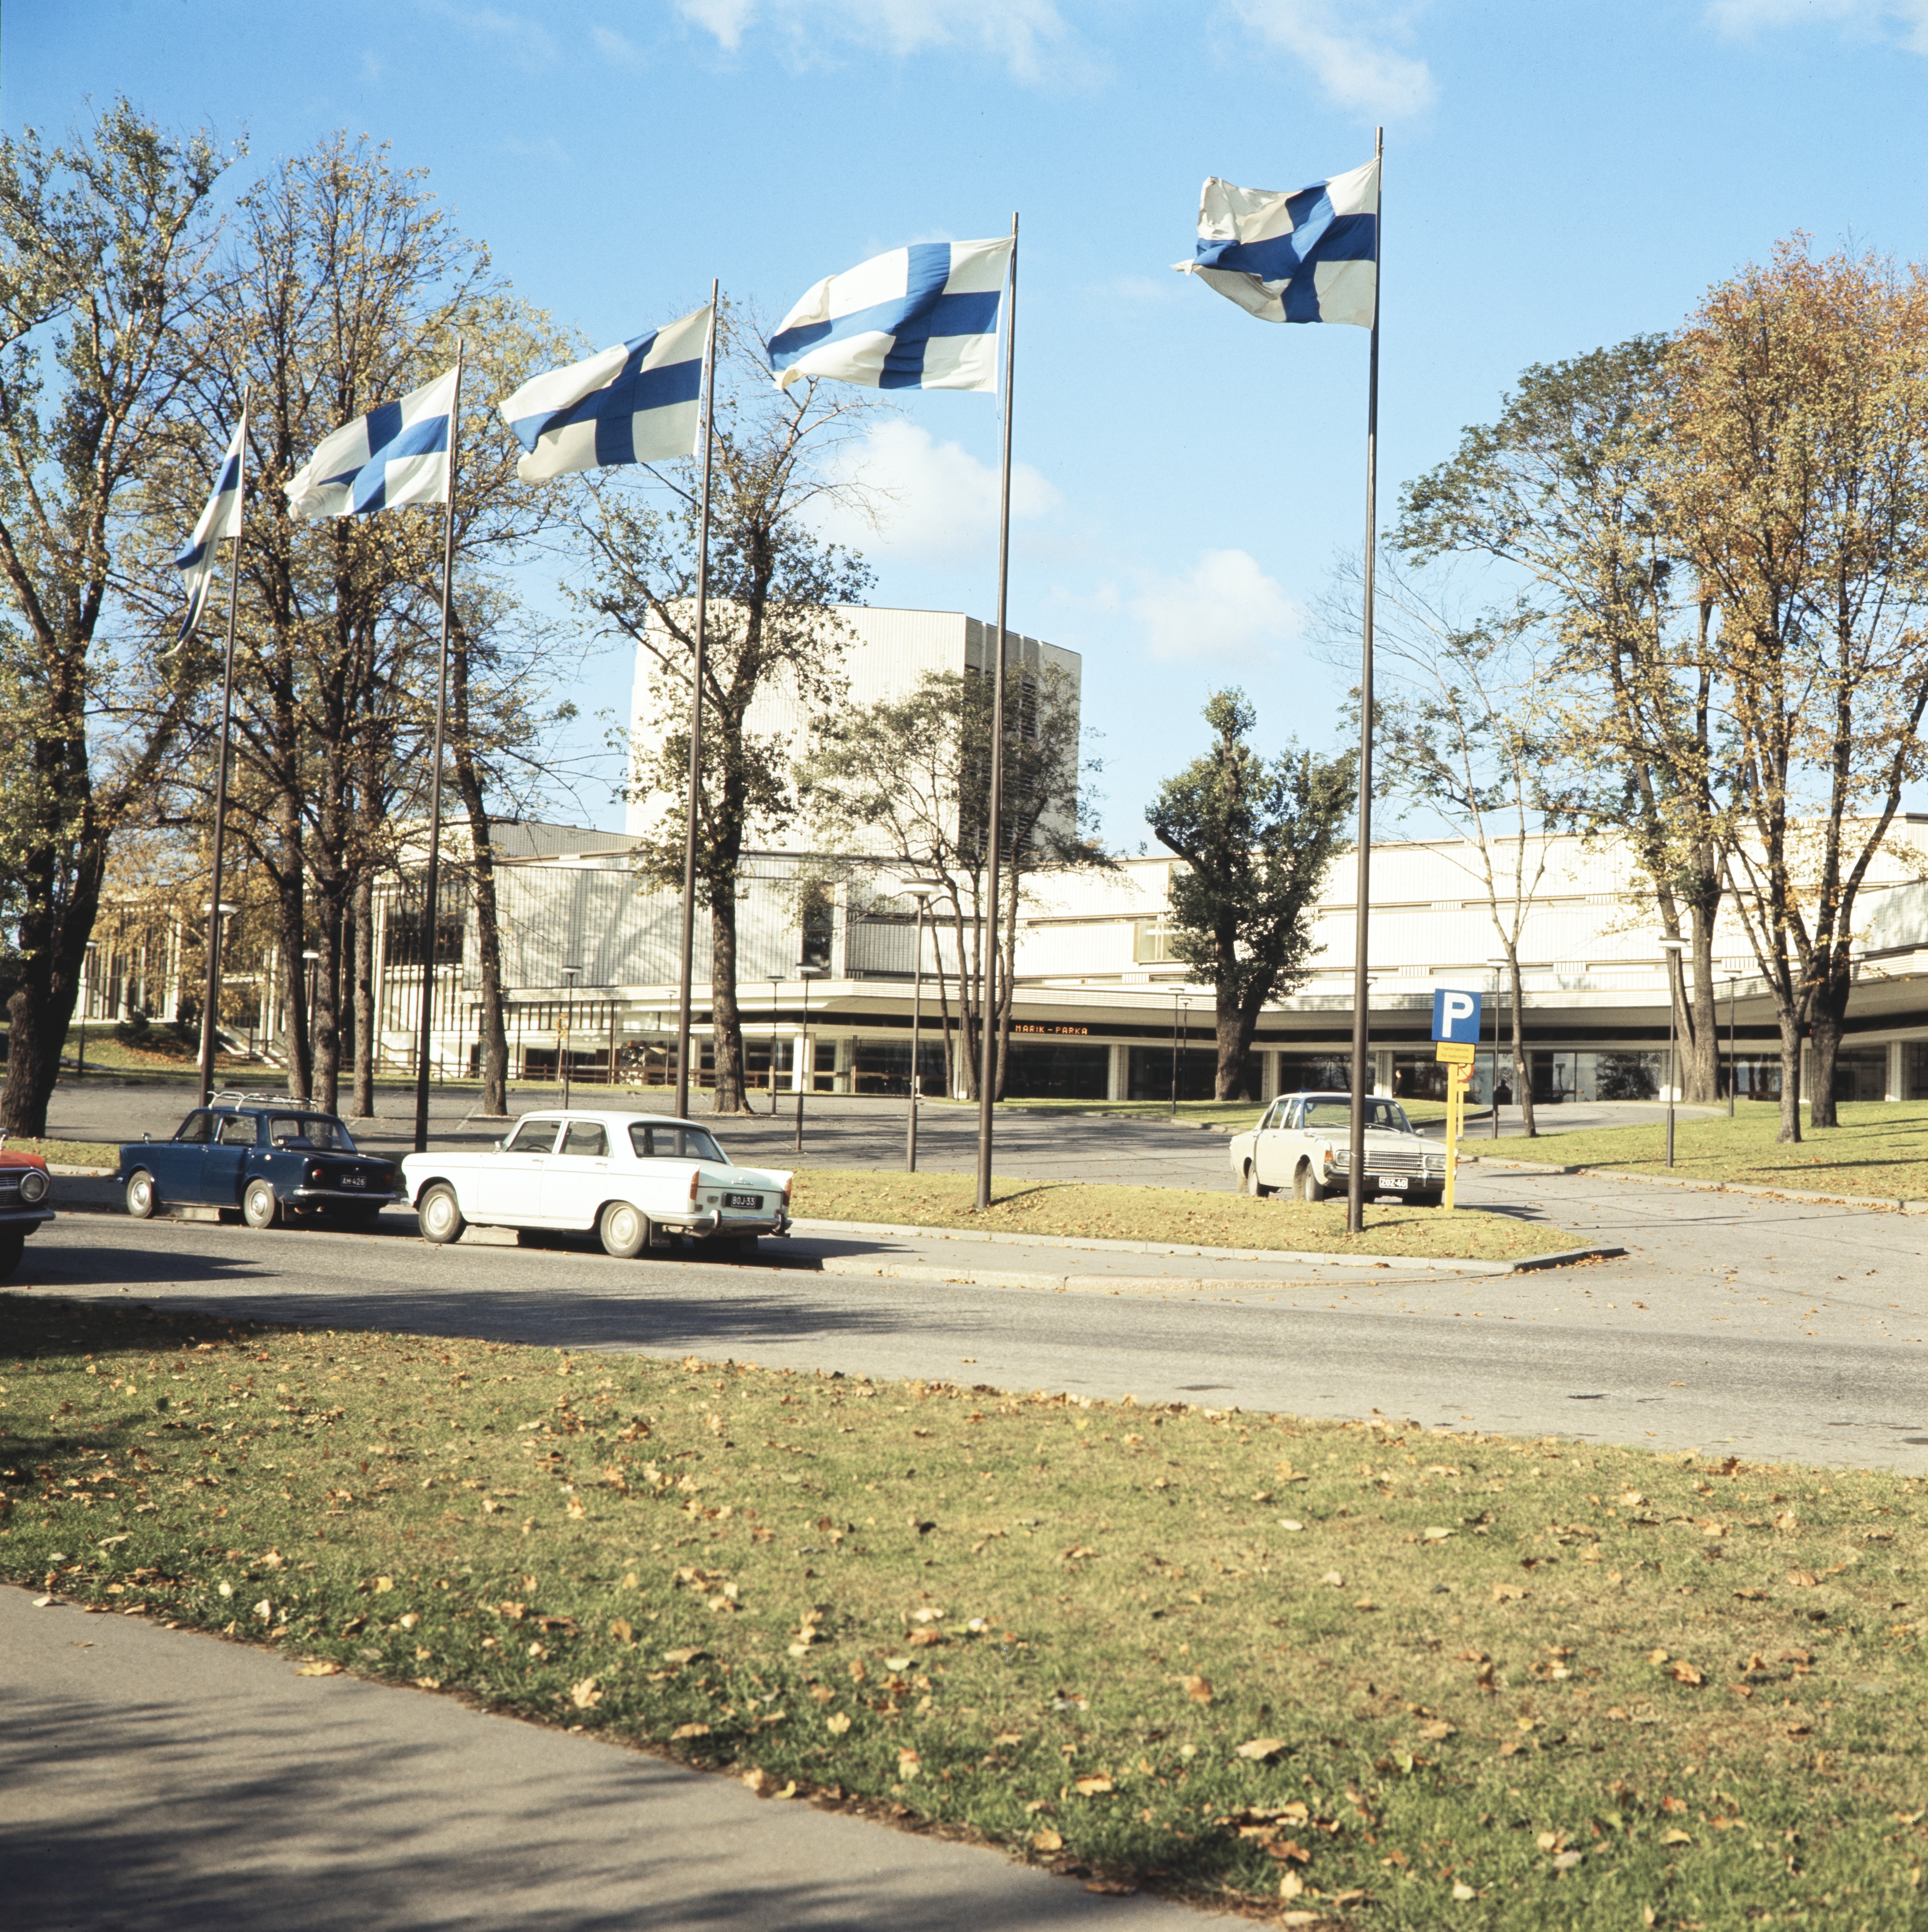 Helsingin Kaupunginteatteri on Suomen suurin ammattiteatteri, jonka ohjelmistossa on viidellä eri näyttämöllä ja lämpiöissä ulkomaisia ja suomalaisia puhenäytelmiä, komedioita ja musiikkiteatteria.